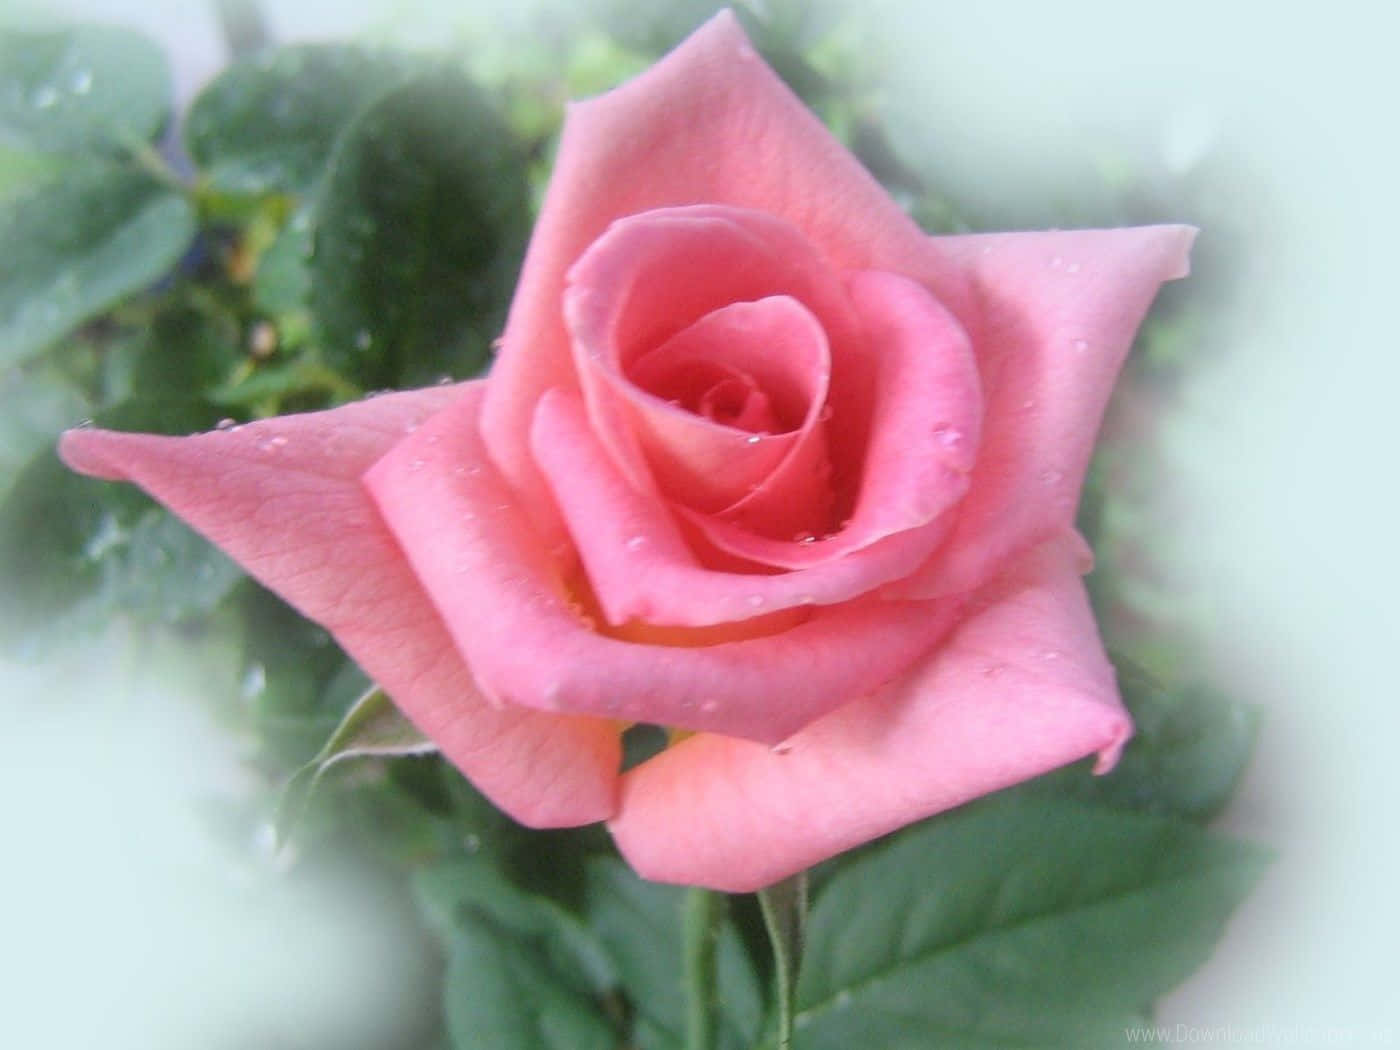 En buket af smukke lyserøde roser mod en blød hvid baggrund.